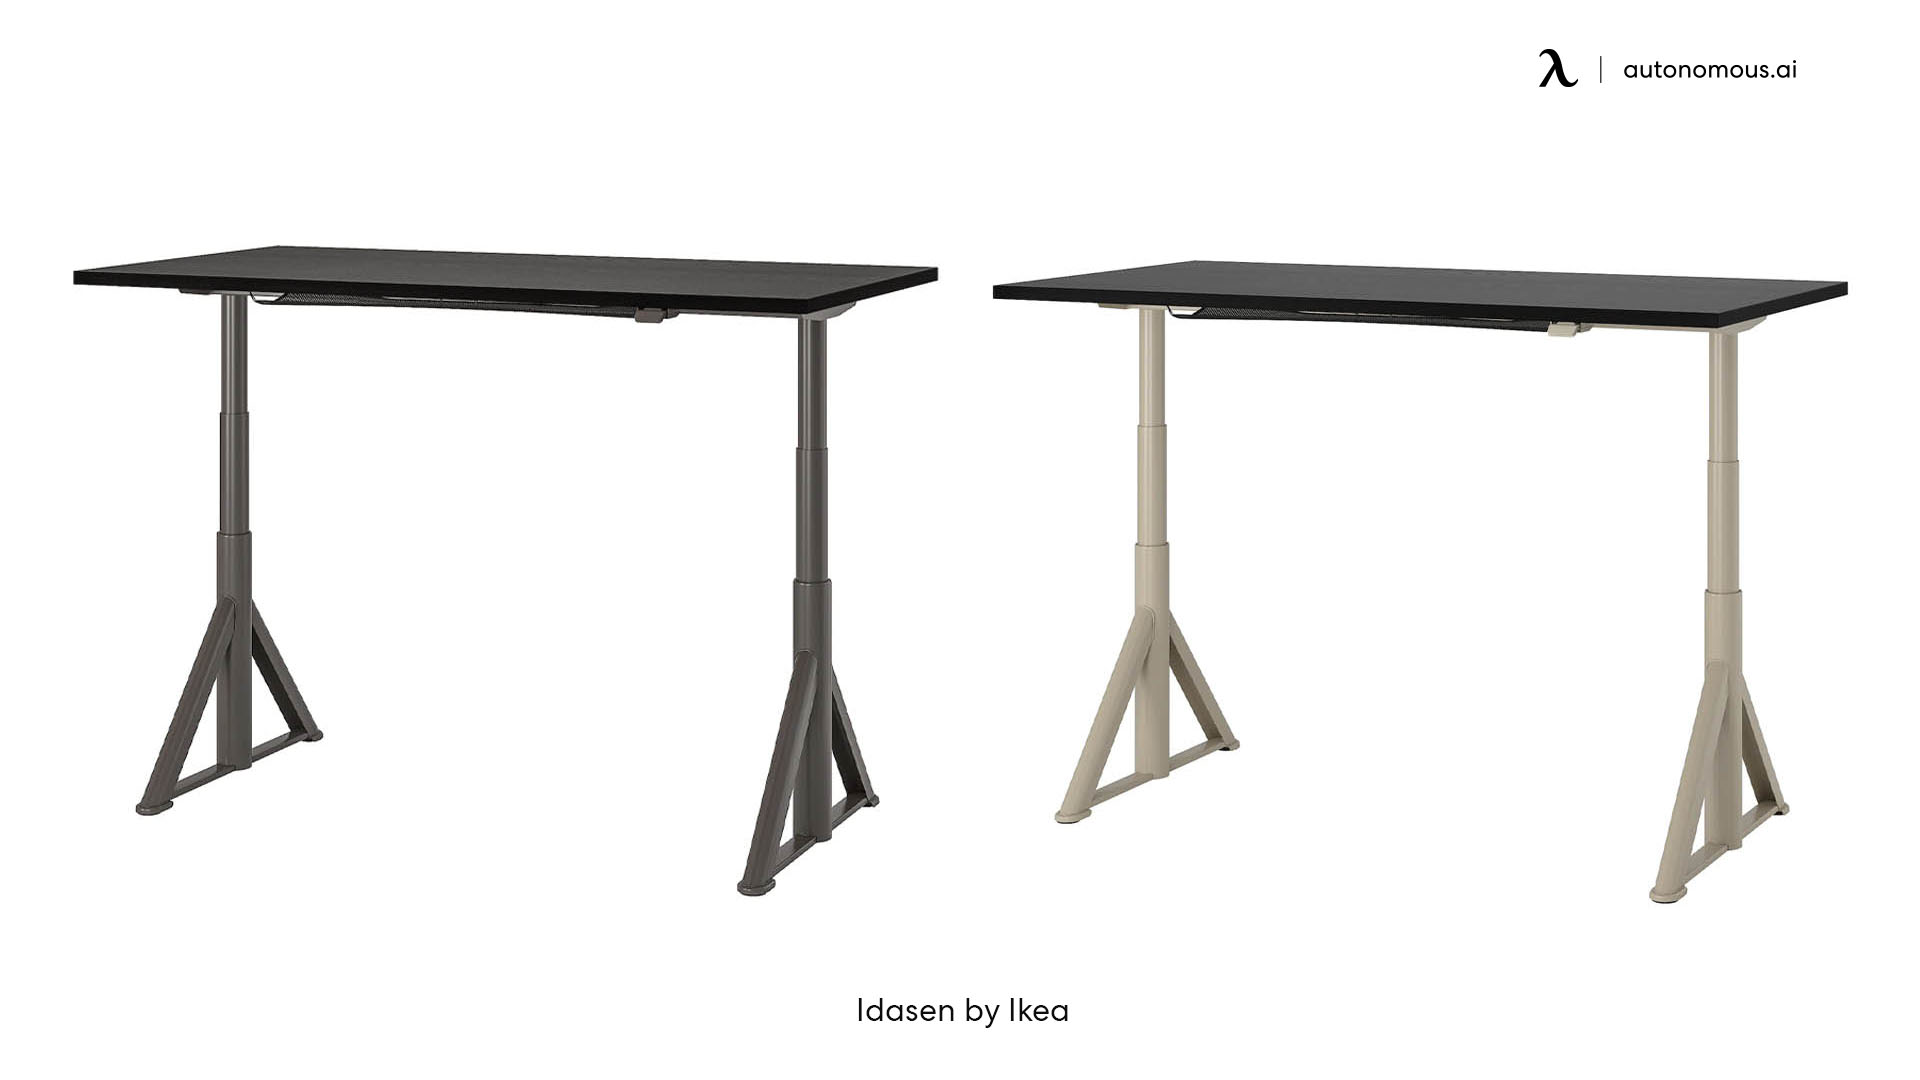 IKEA Idasen Adjustable Standing Desk